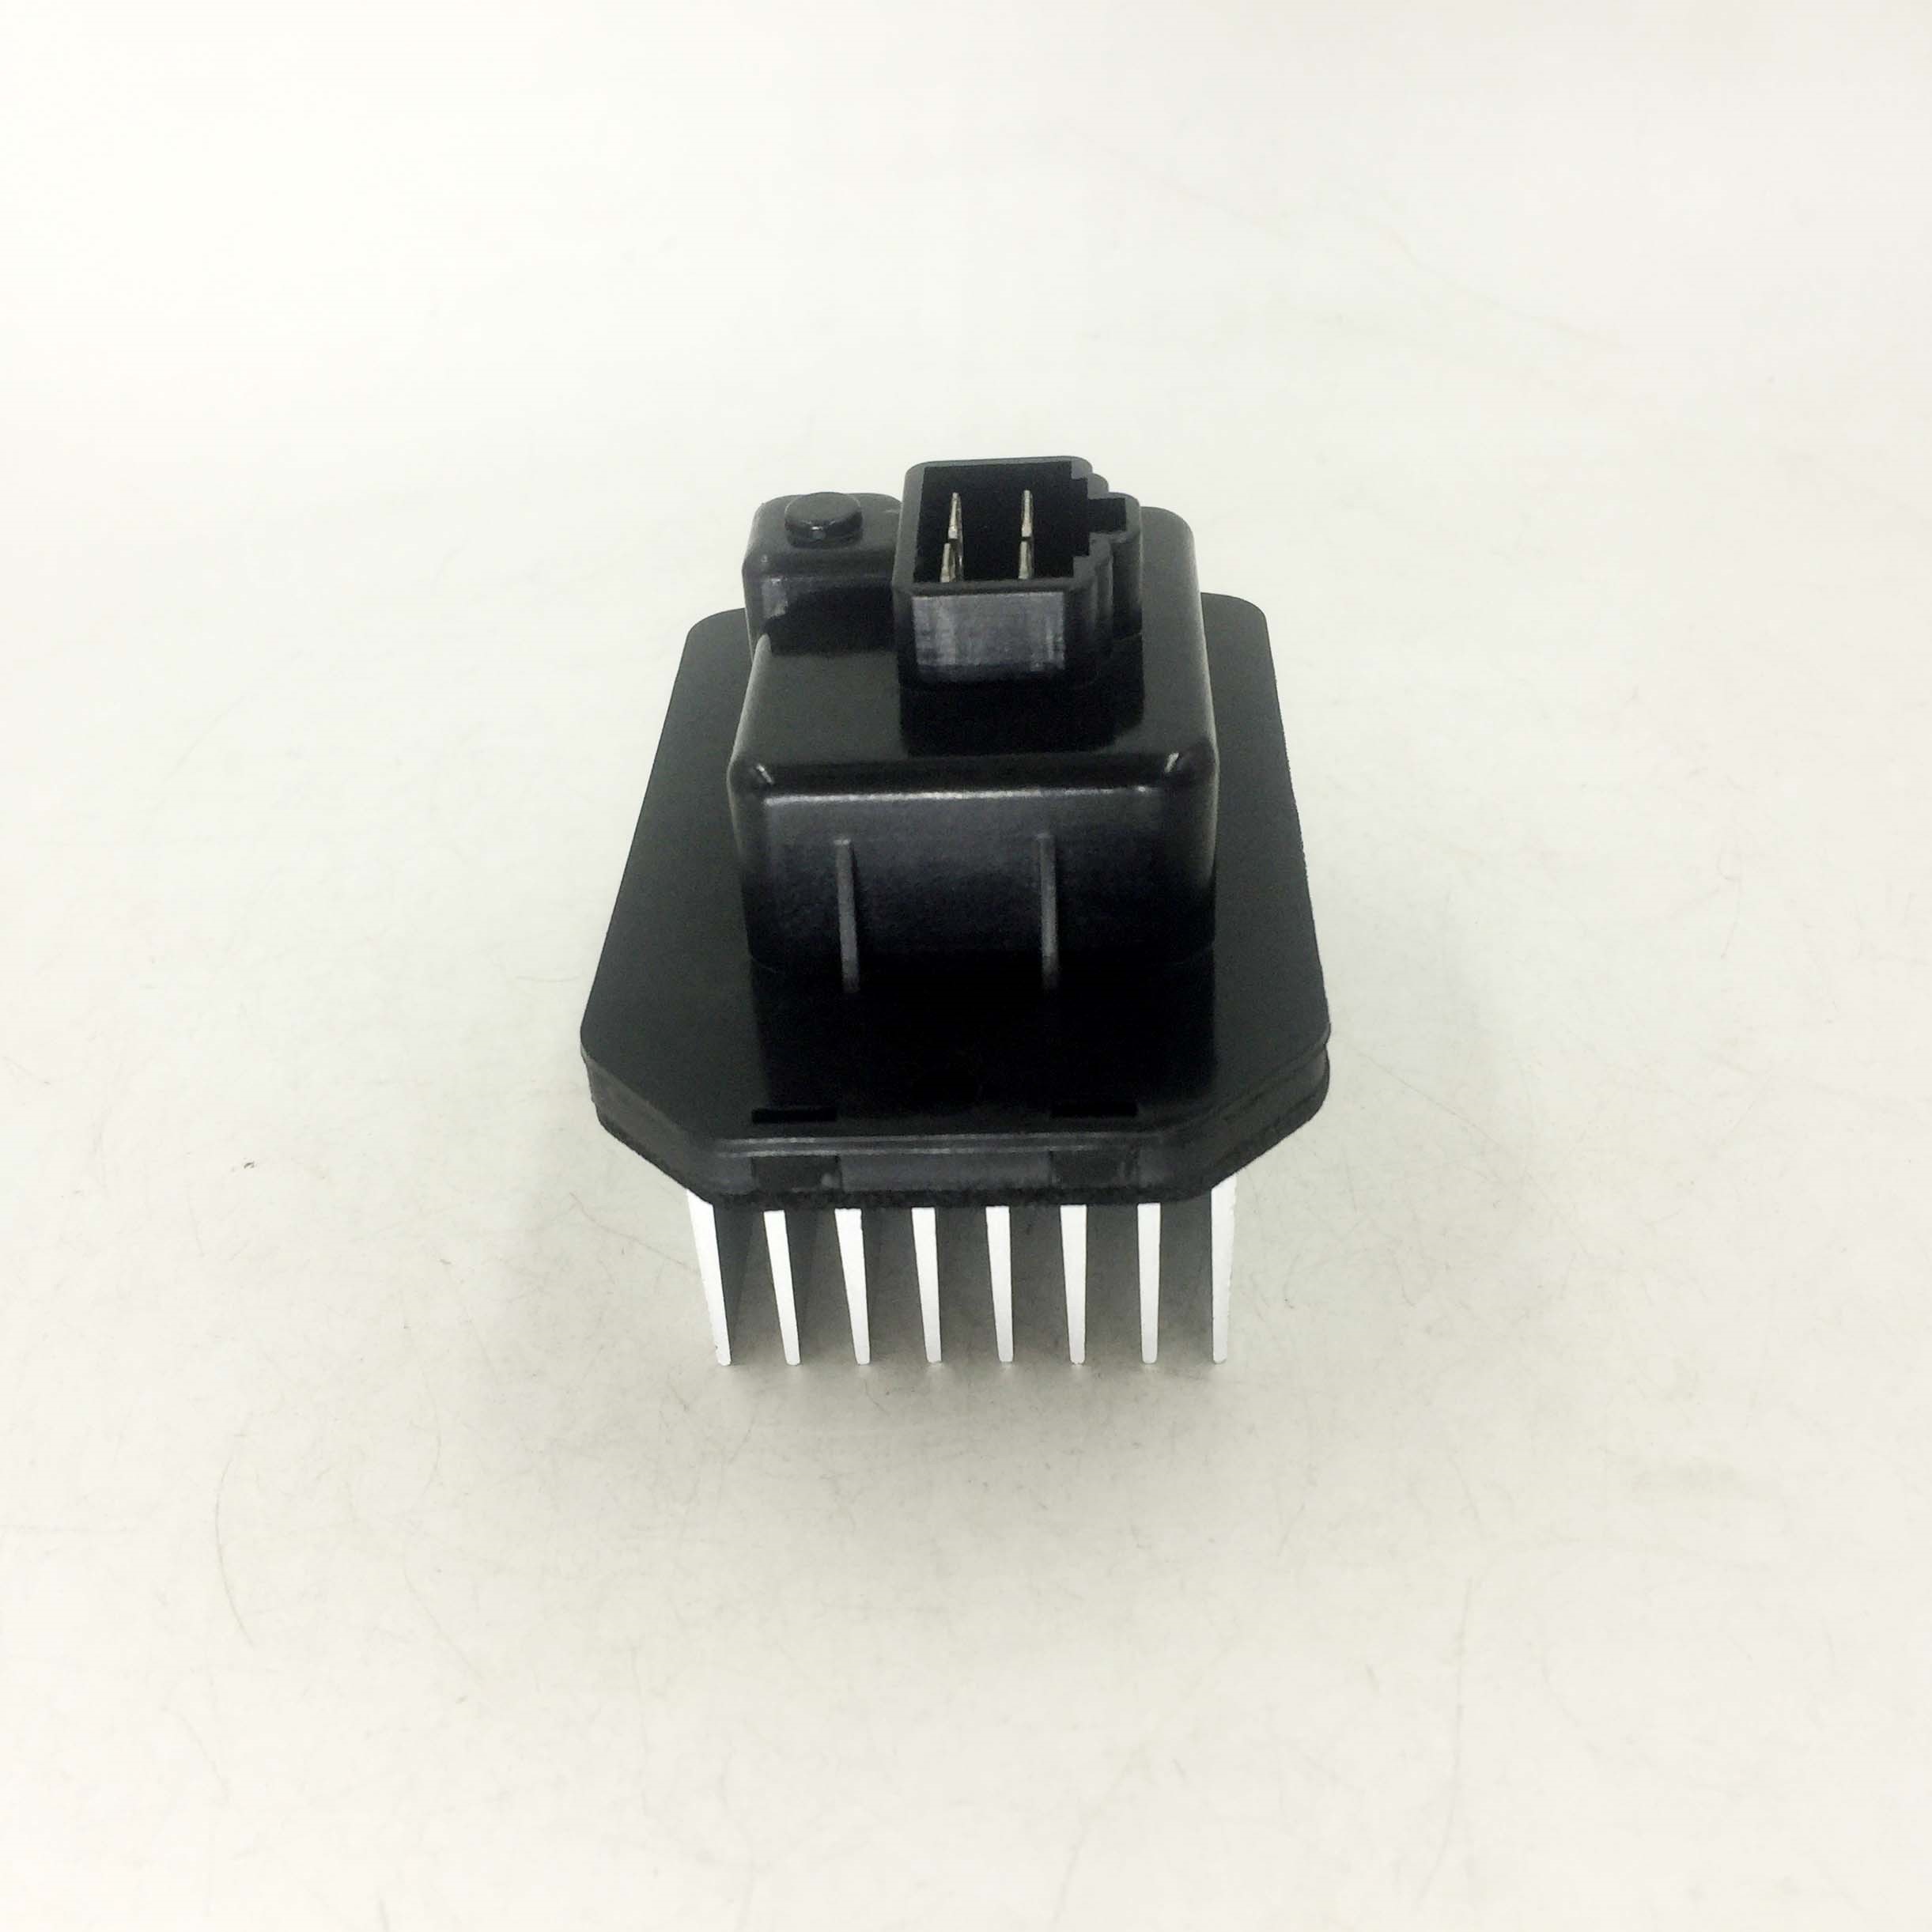 blower motor resistor for Engineering vehicle SG077800-1170